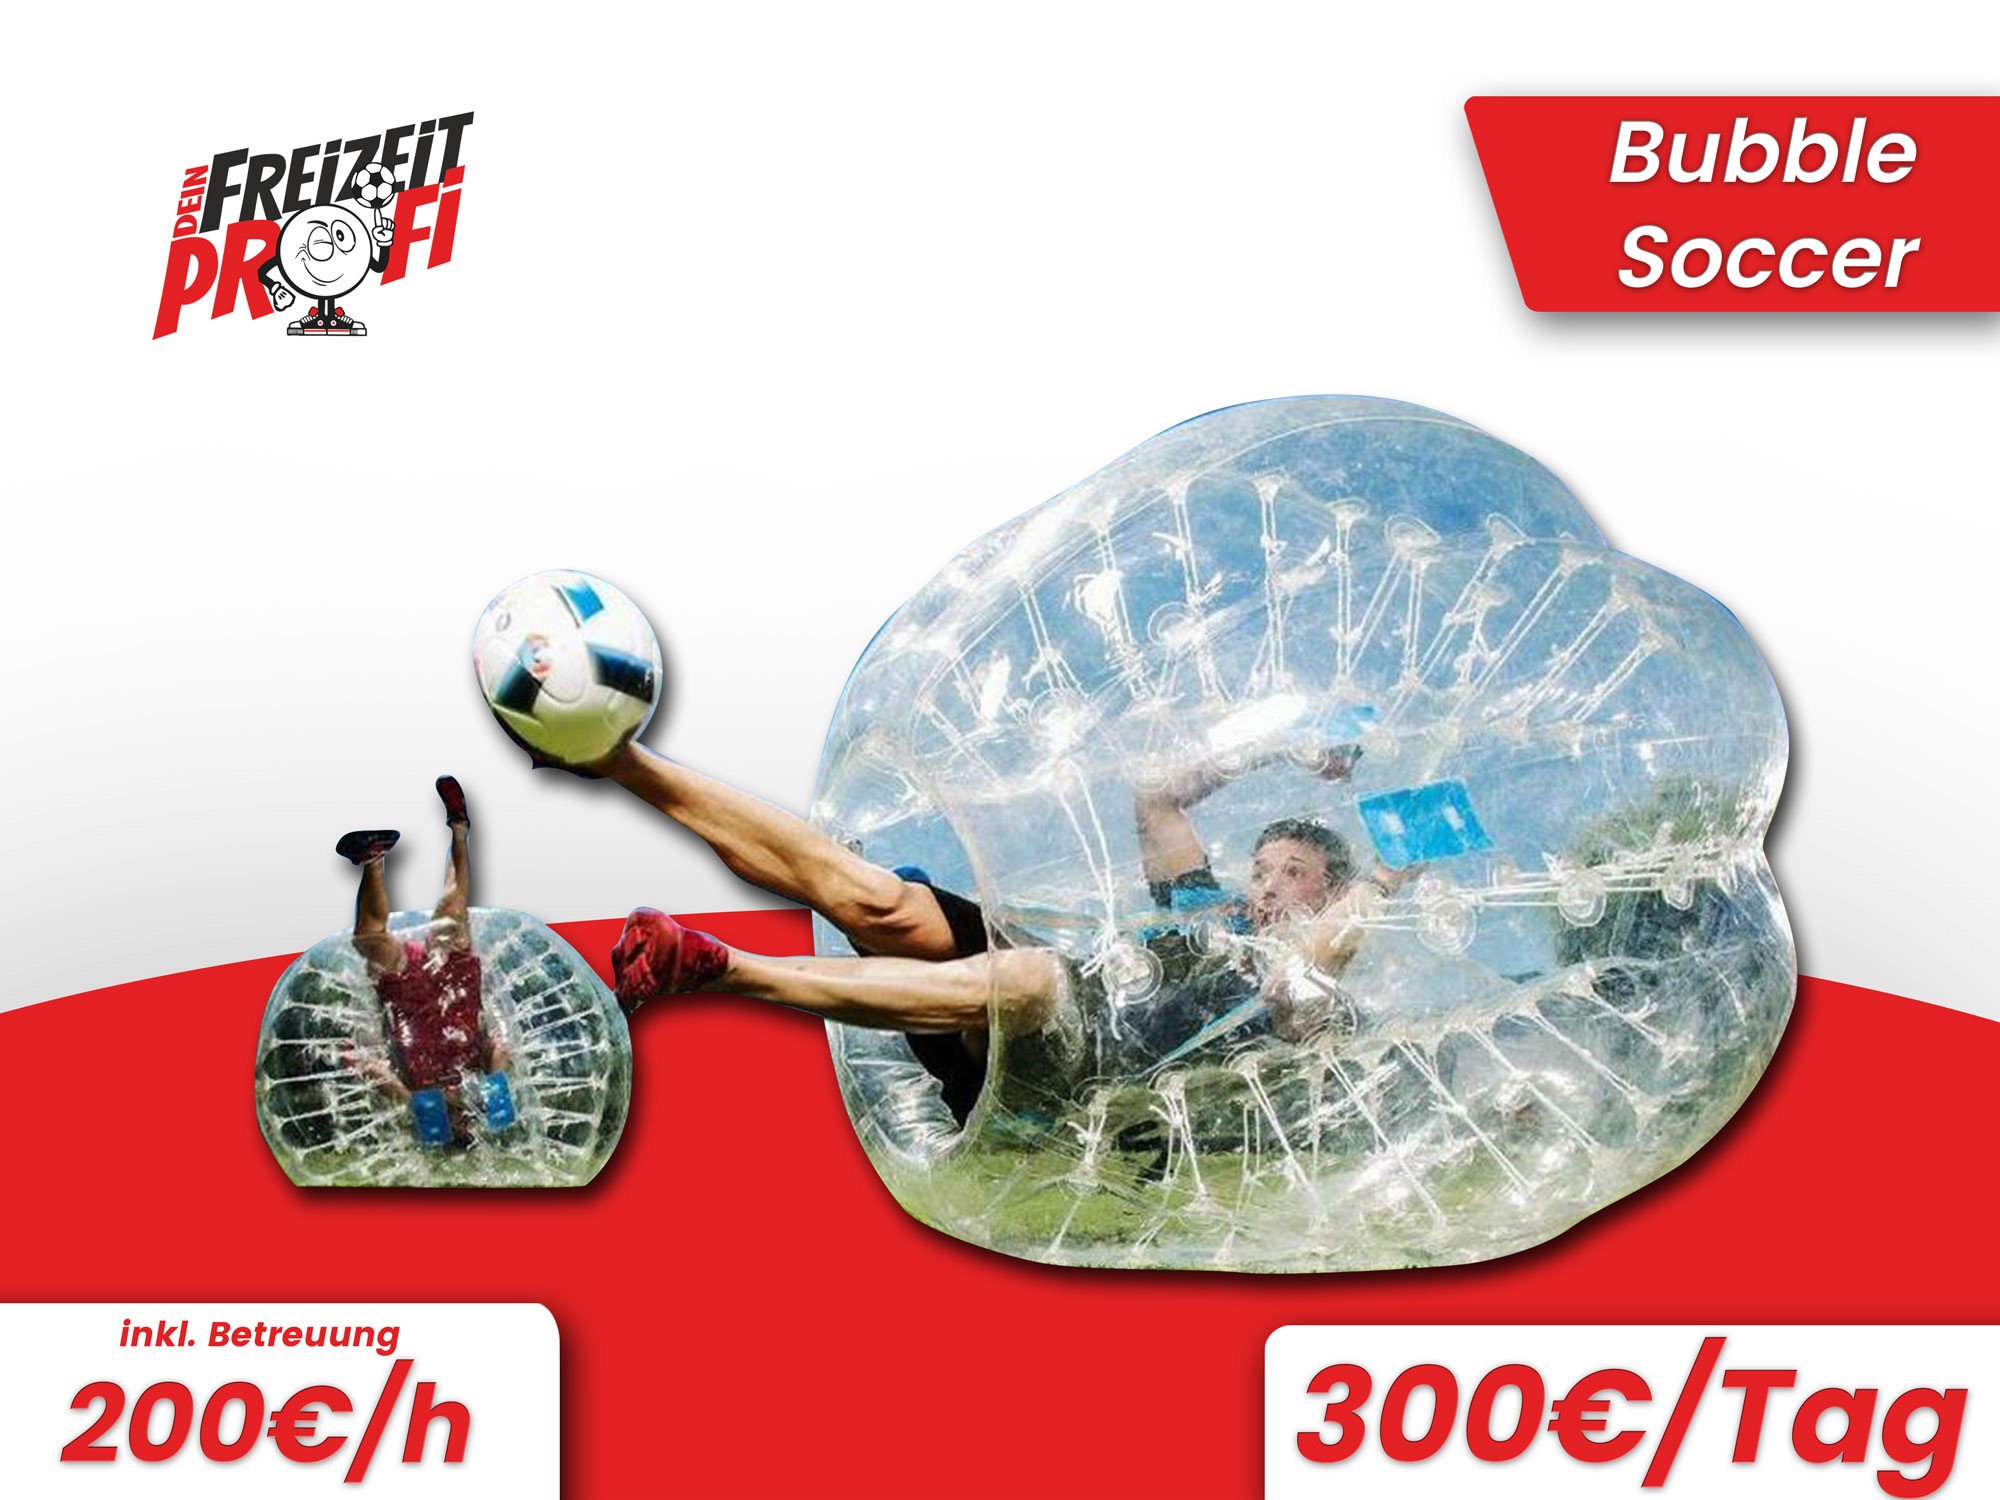 Ihr seid auf der Suche nach Bubble Soccer in Thüringen?